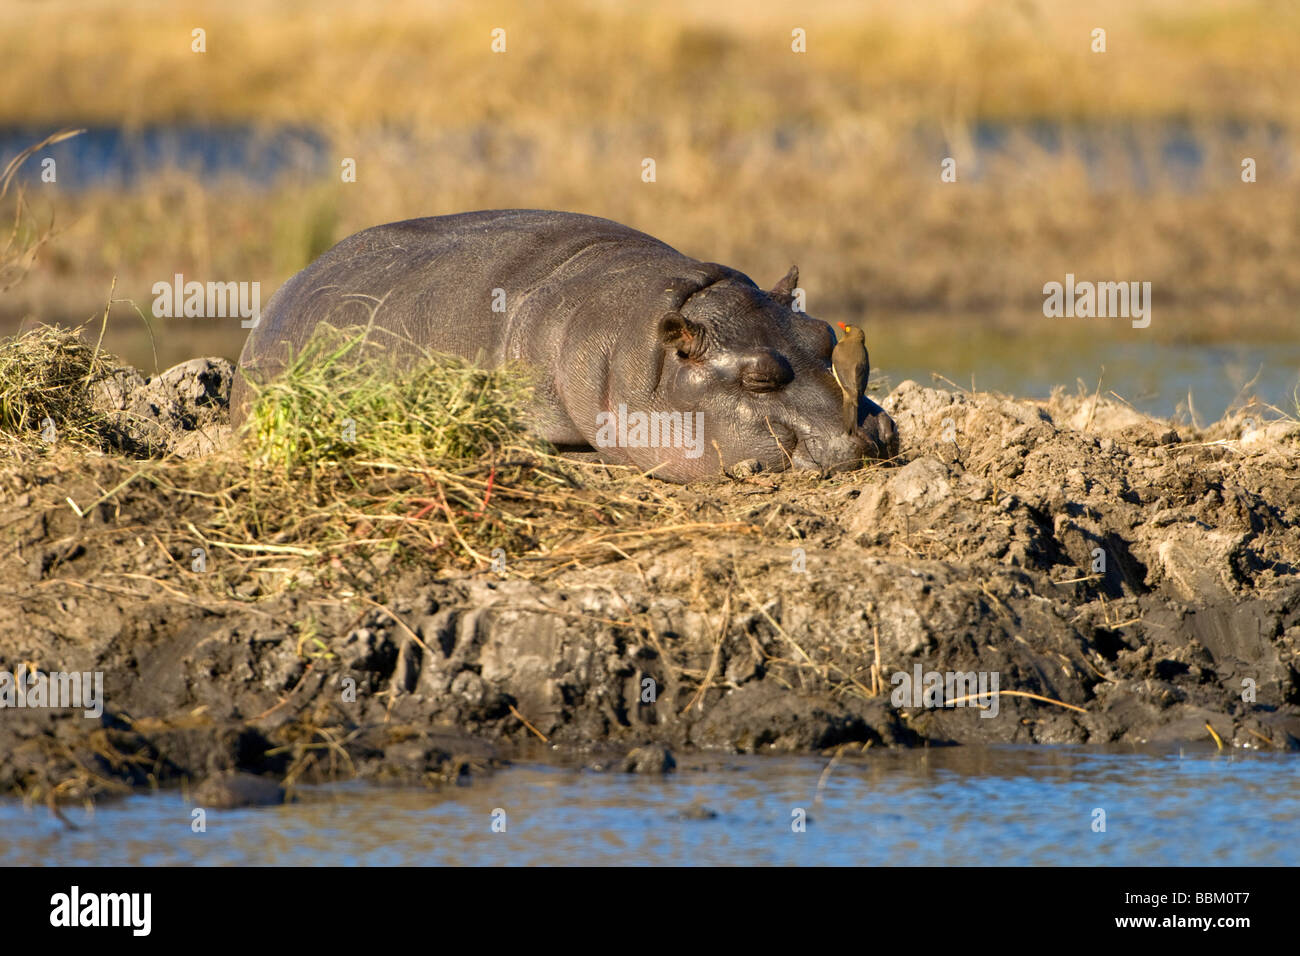 Hippo (Hippopotamus amphibius), young animal sunbathing, Chobe National Park, Botswana, Africa Stock Photo